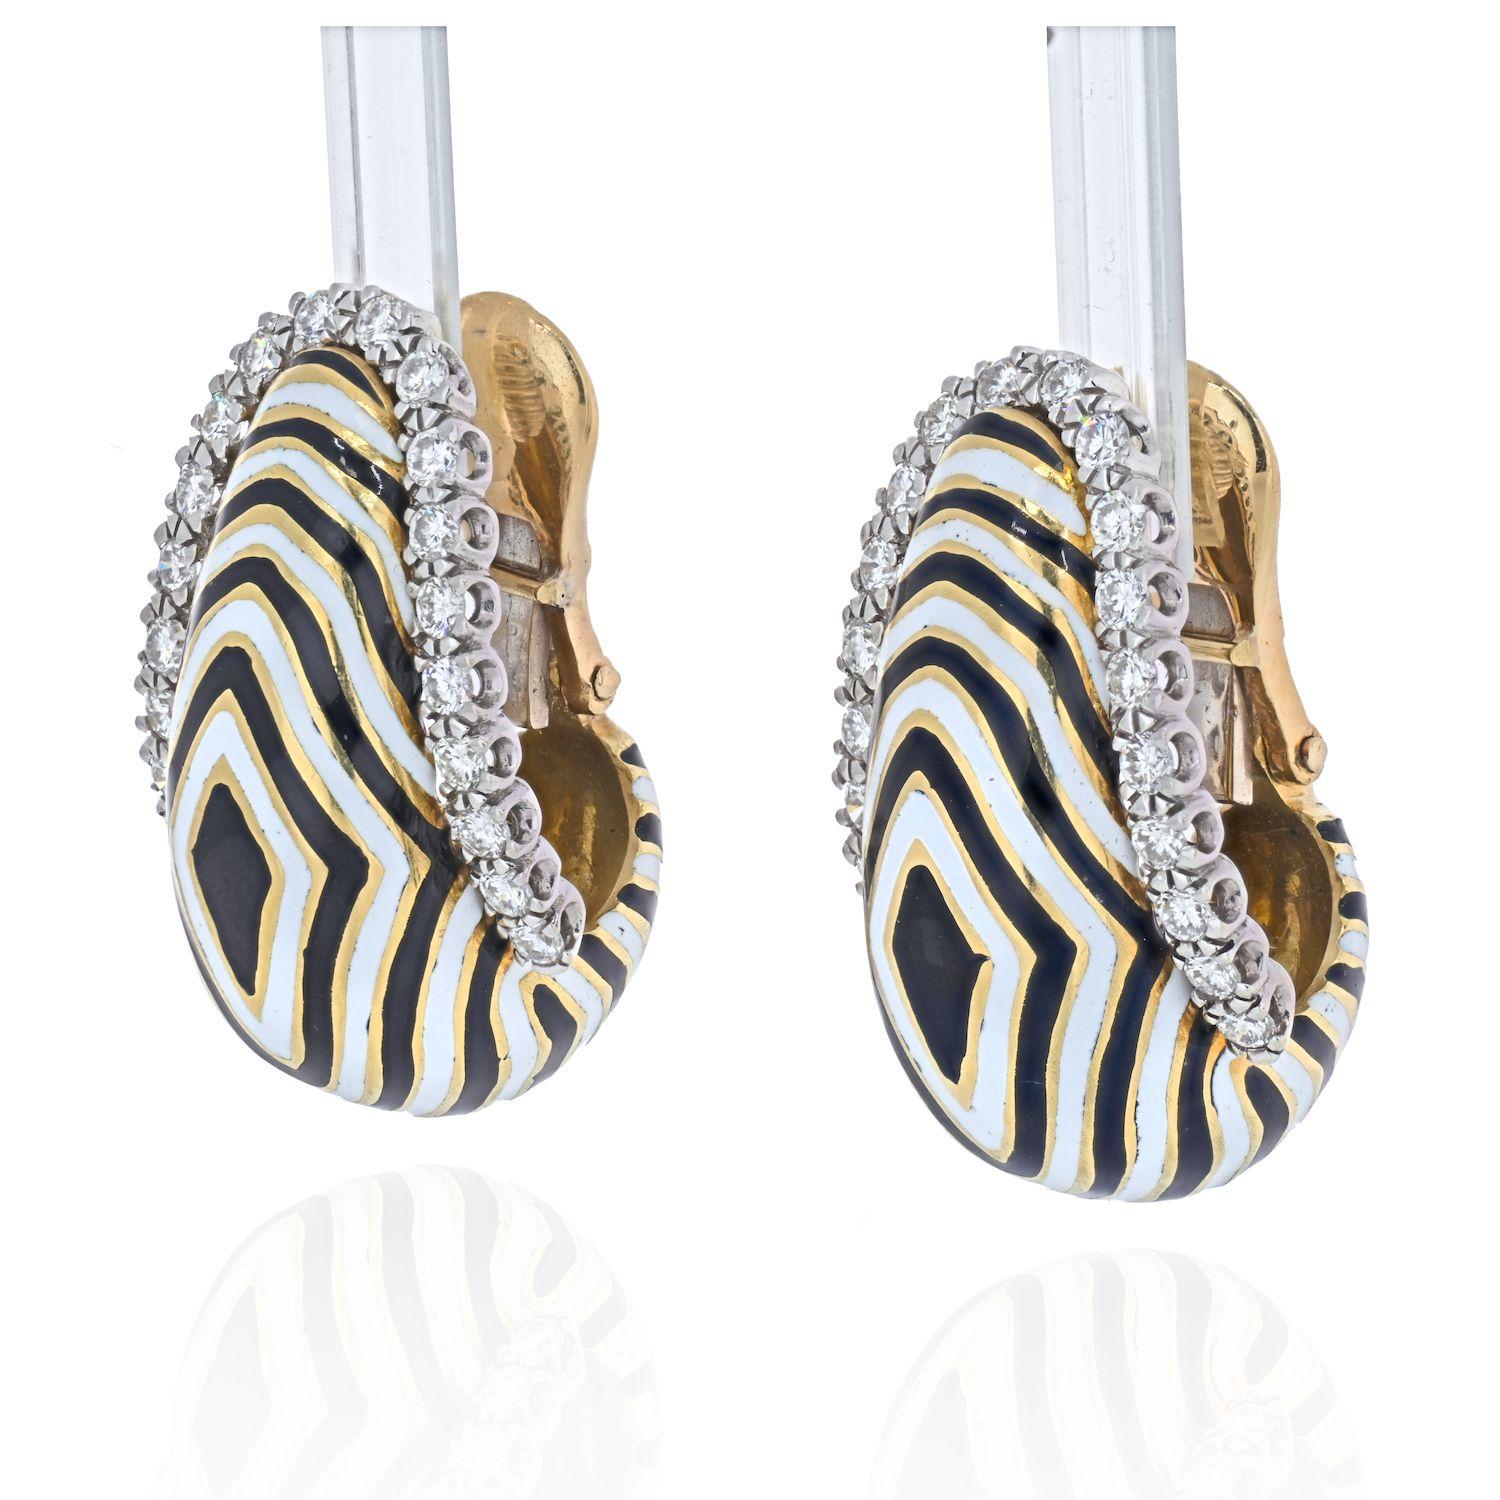 Ein aktuelles Modell aus der Kollektion von David Webb: Vreeland Zebra-gestreifte Diamant-Ohrringe. Mit schwarzer und weißer Emaille wird das atemberaubende, von Tieren inspirierte Motiv in Szene gesetzt. Sie werden von 1,46 Karat Diamanten im